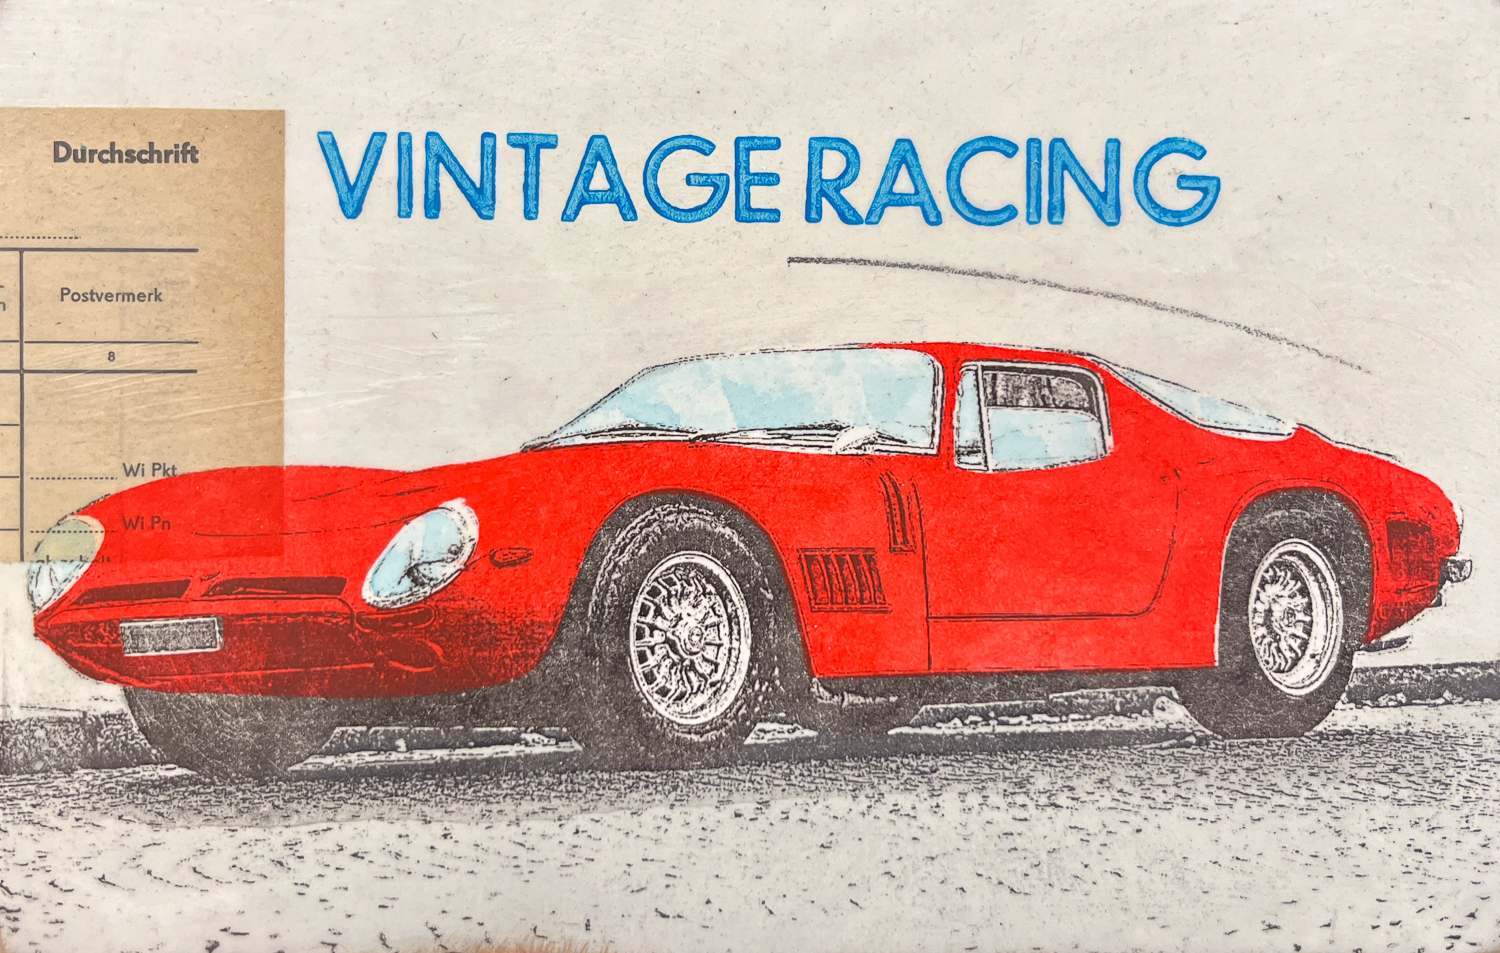 Vintage Racing von Petersen, 3D Kunstobjekt mit rotem Porsche,  Retro Rennwagen Kunst